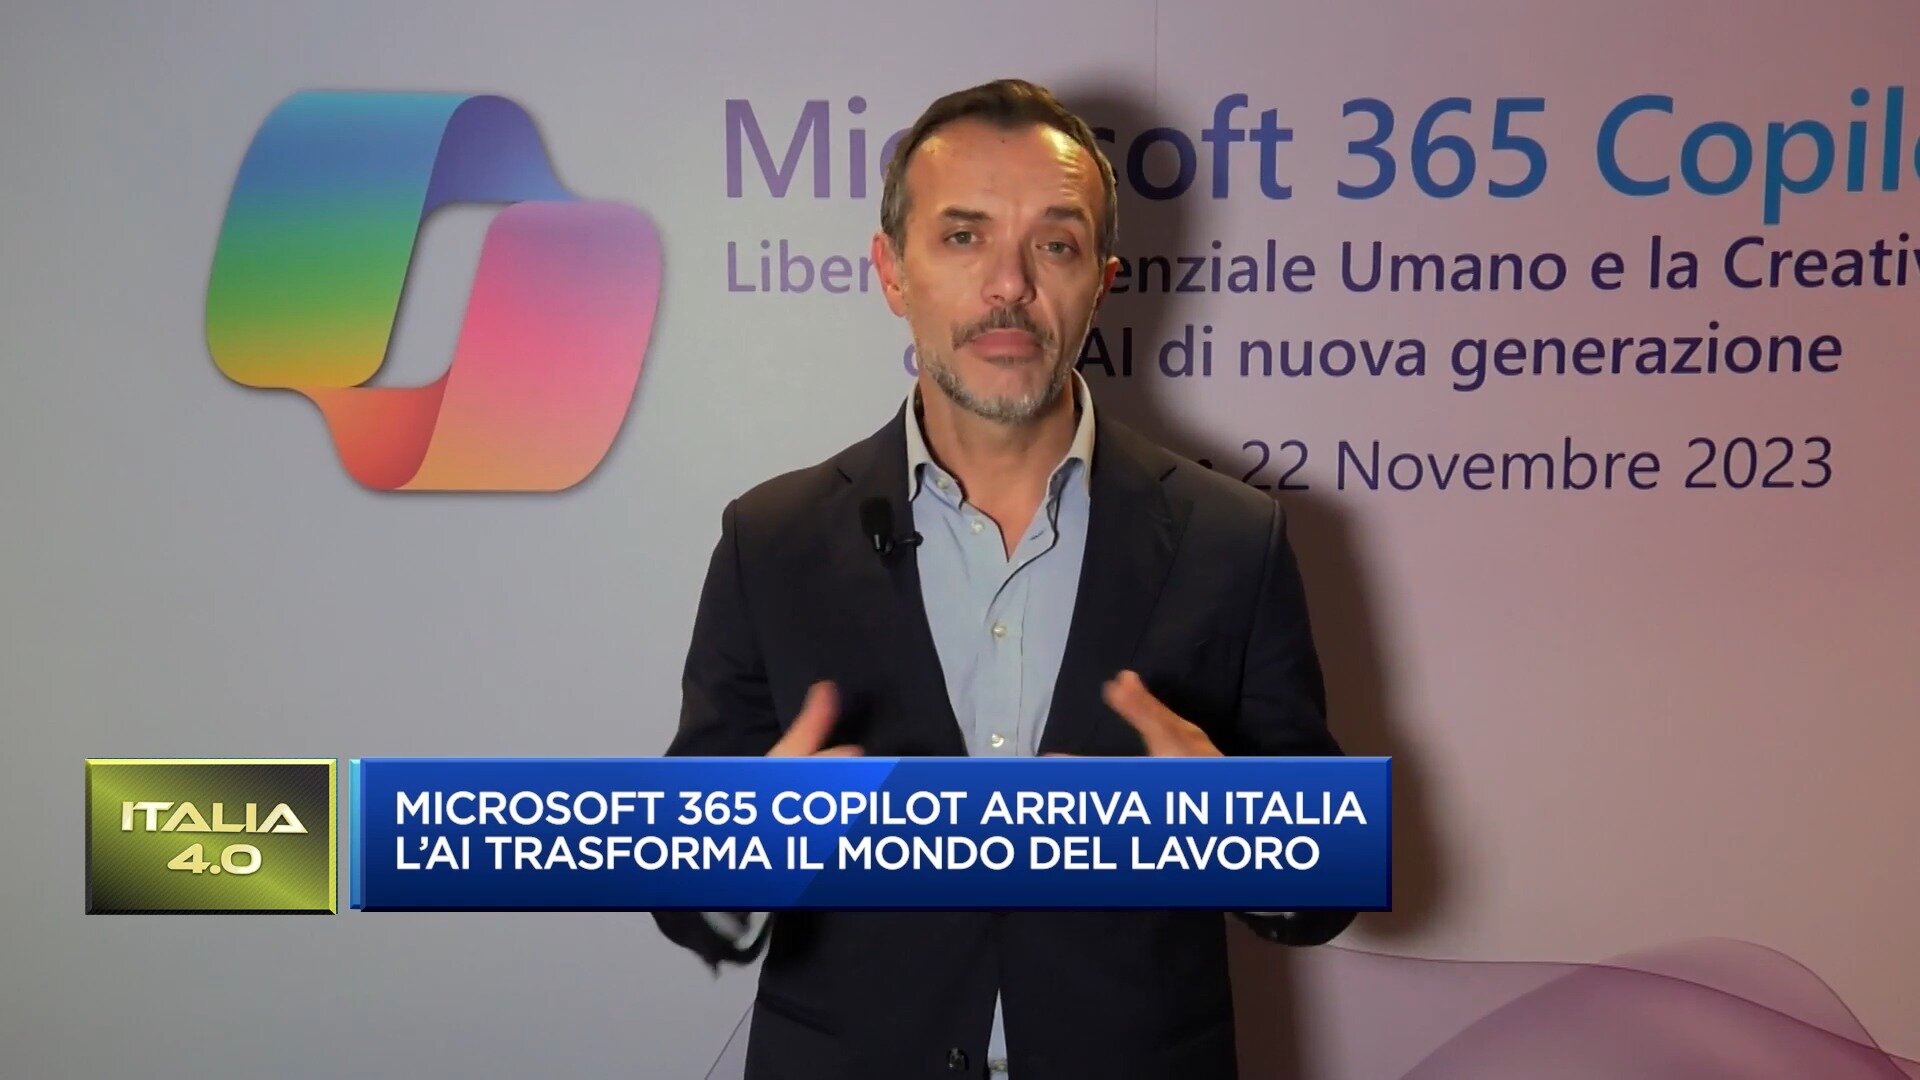 Microsoft 365 Copilot arriva in Italia: l'AI trasforma il mondo del lavoro